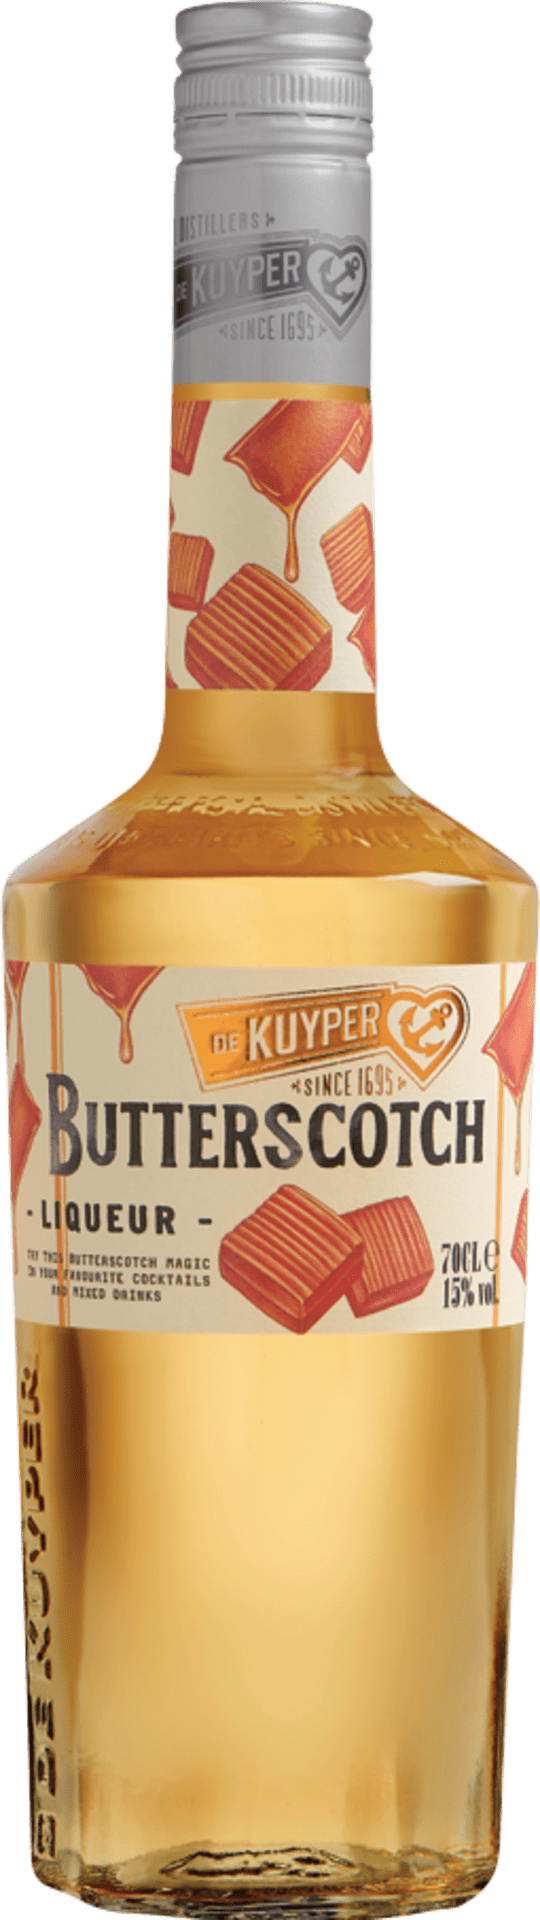 Butterscotch Liqueur